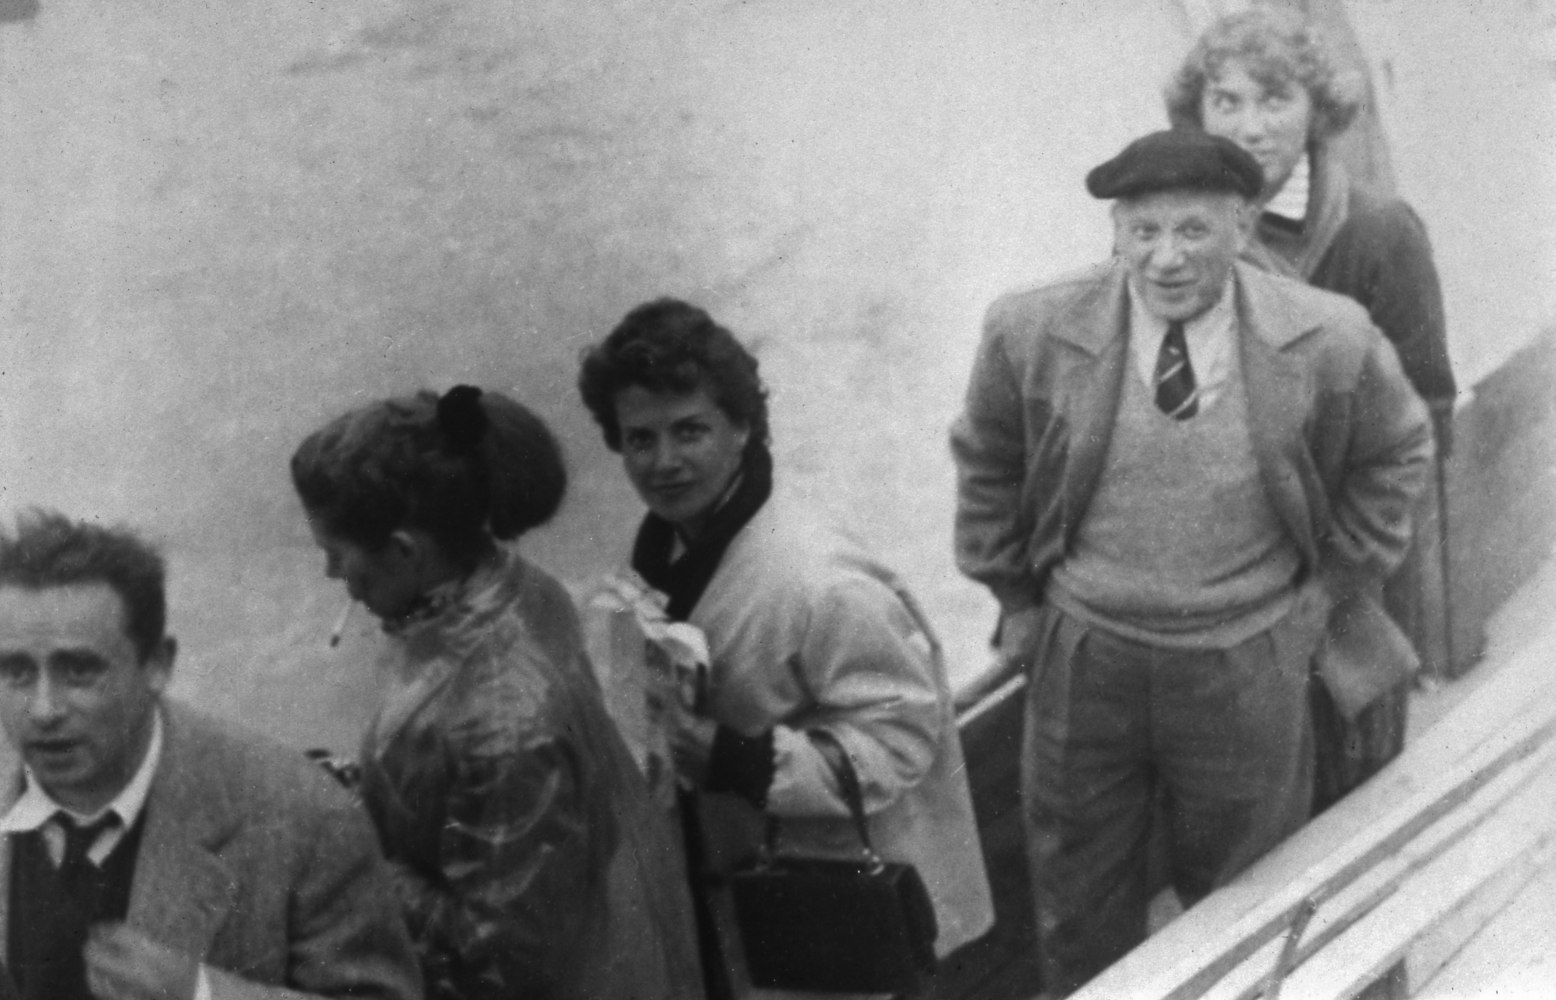 Picasso avec sa fille Maya et le cin&amp;eacute;aste Henri-Georges Clouzot, Arenes d&amp;#39;Arles, 1953

vintage silver gelatin print

9 x 5 1/2 inches; 22.9 x 14 centimeters

LSFA# 11155